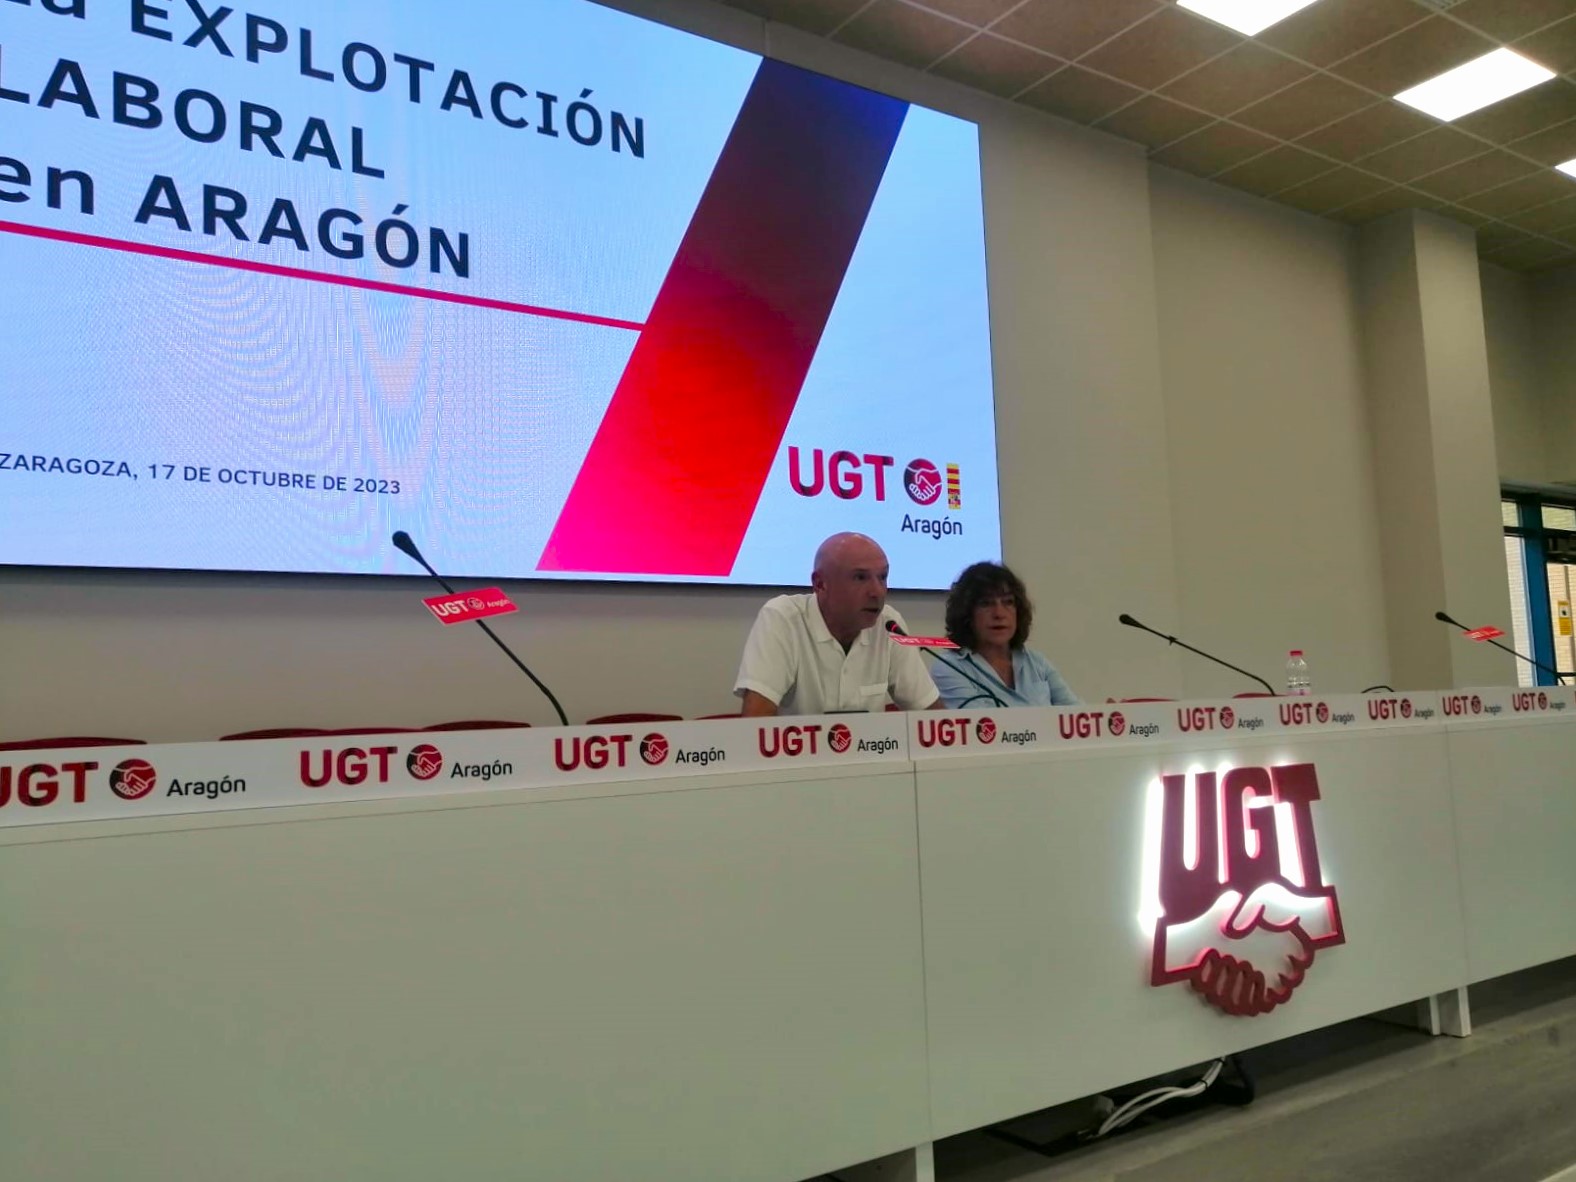 imagen de la rueda de prensa de la presentación del informe " Explotación Laboral en Aragón"